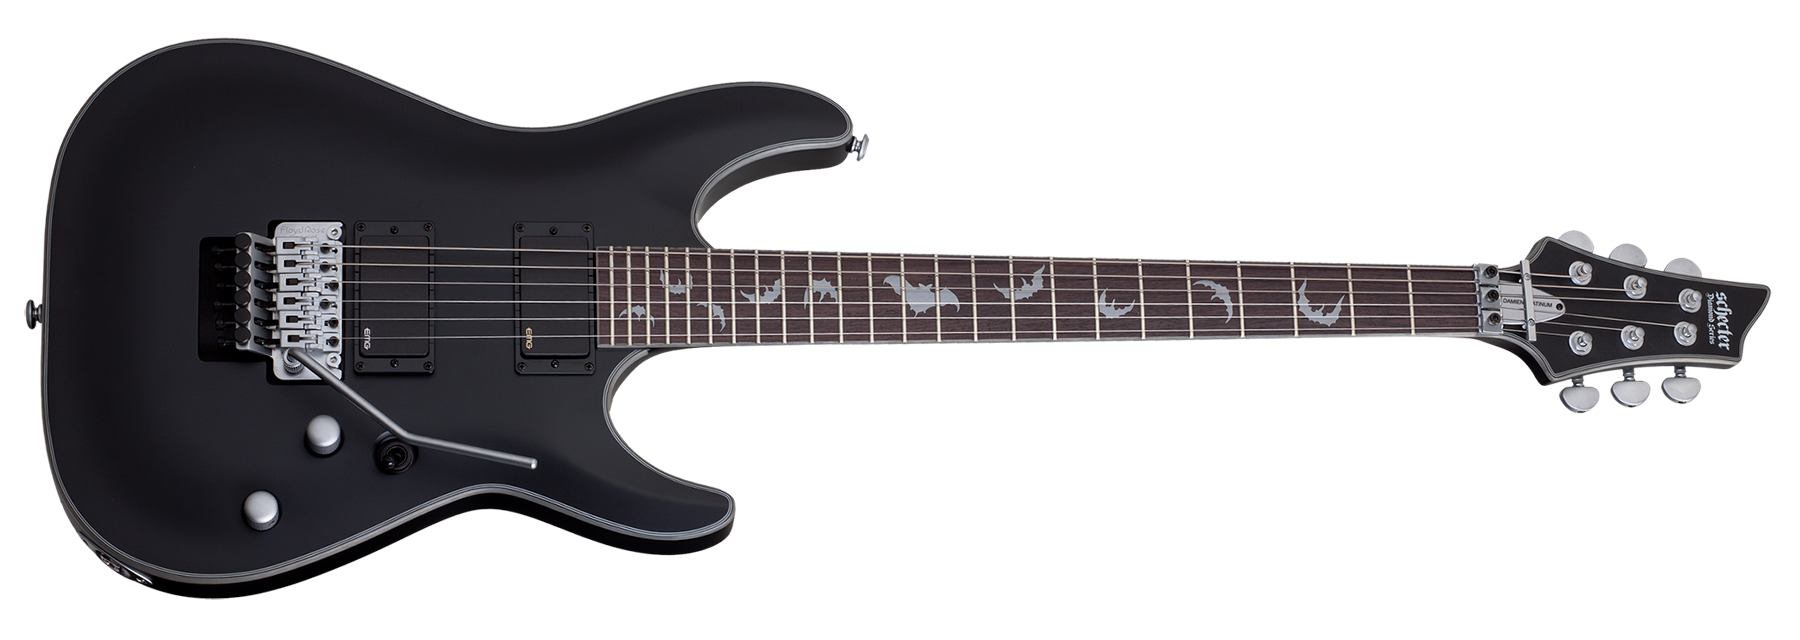 シェクター AD-DM-PTM-FR Damien Platinum - ギター